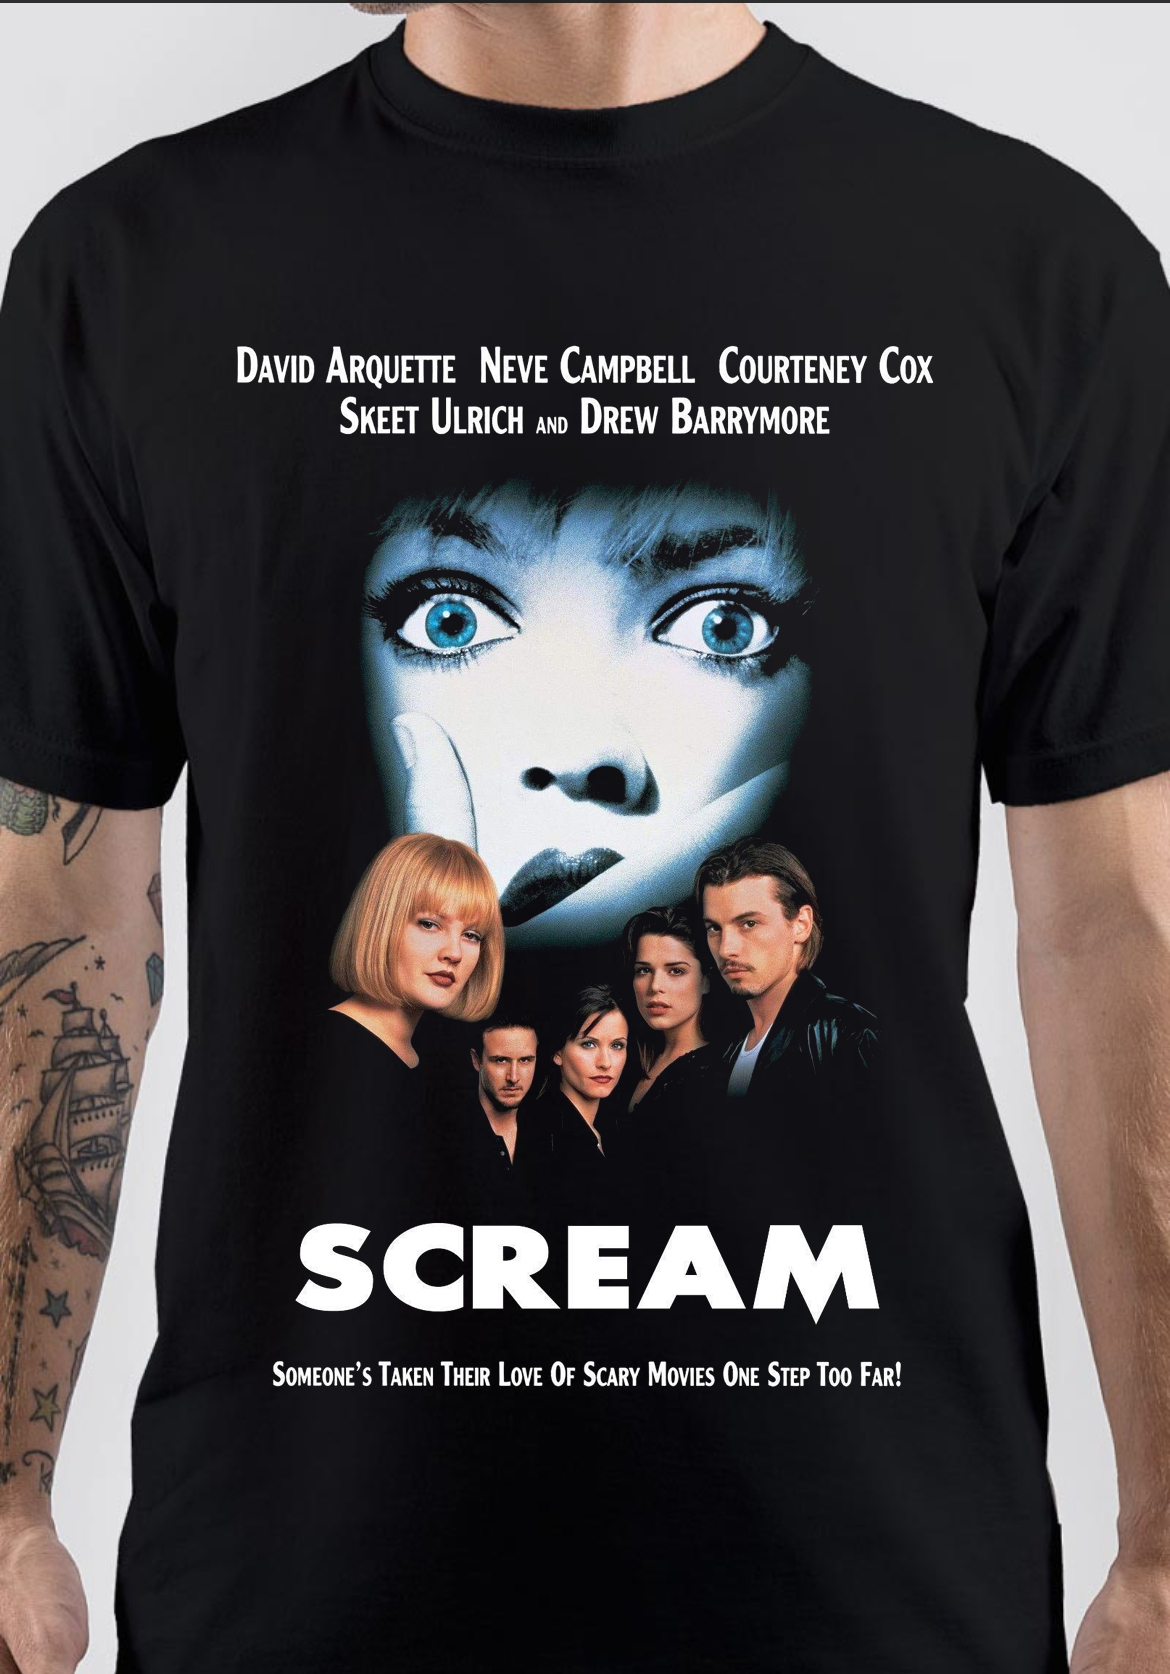 Scream T-Shirt And Merchandise